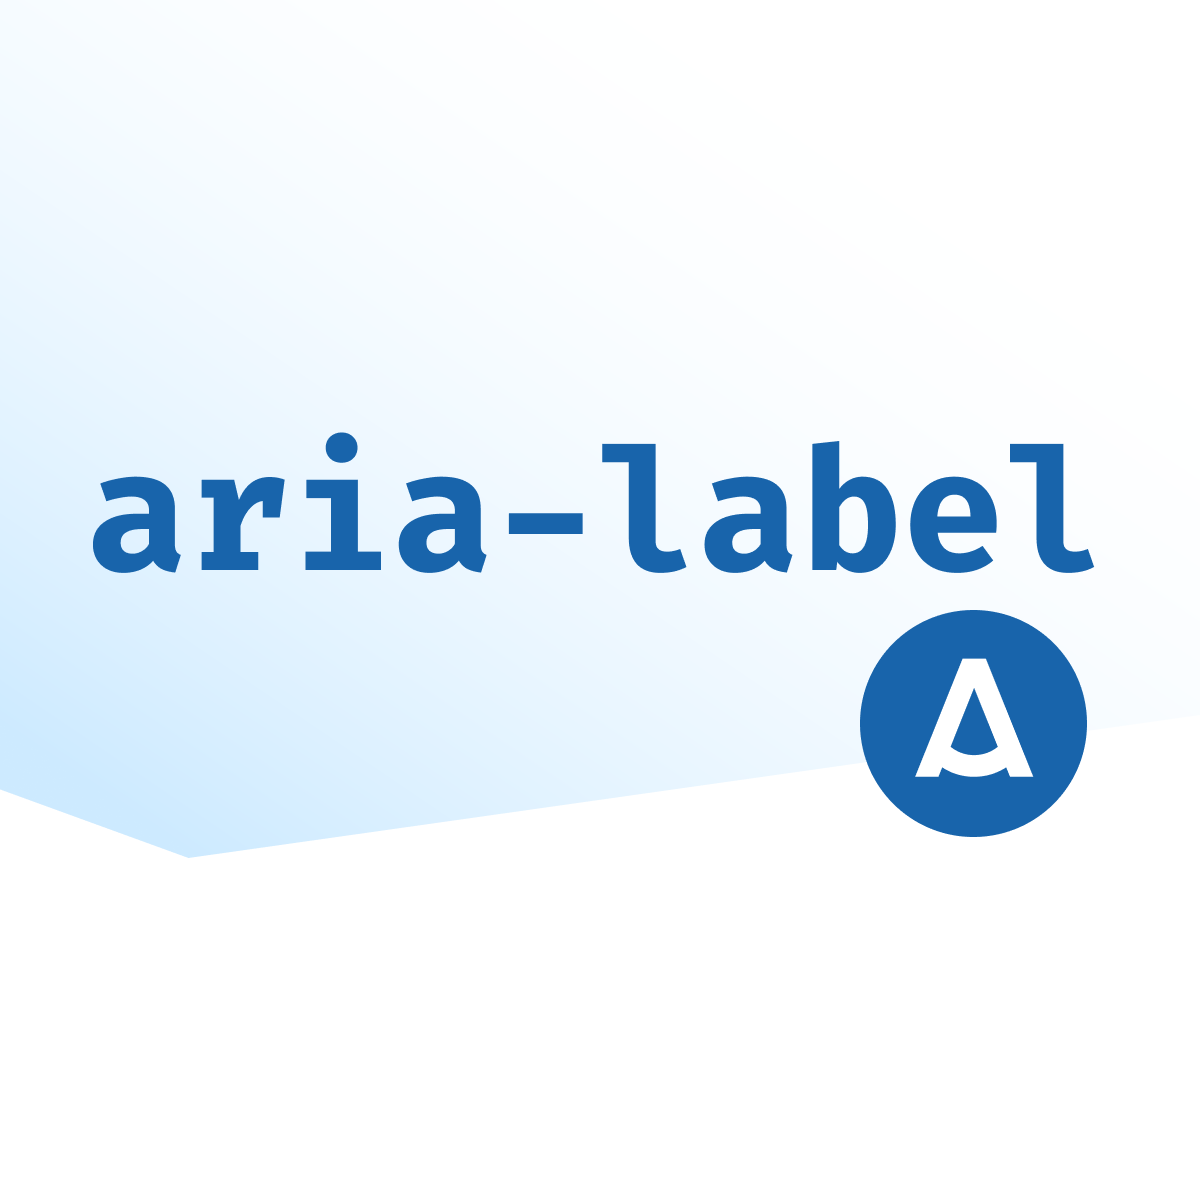 aria-label - examples and best practices  Aditus